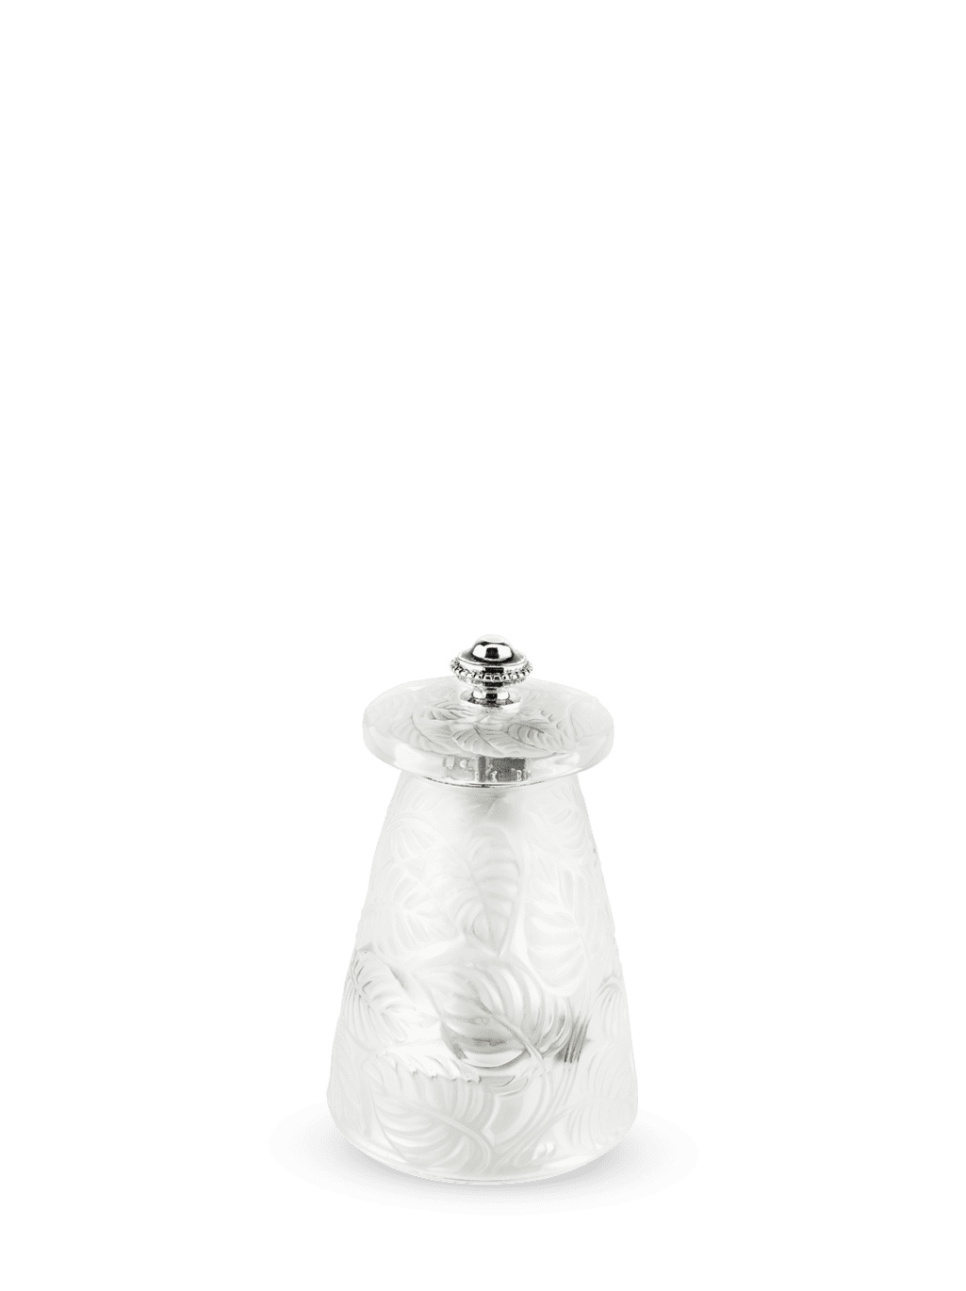 Saltmølle, Lalique, 9 cm - Peugeot i gruppen Madlavning / Køkkenredskaber / Salt & peberkværne hos The Kitchen Lab (1090-22578)